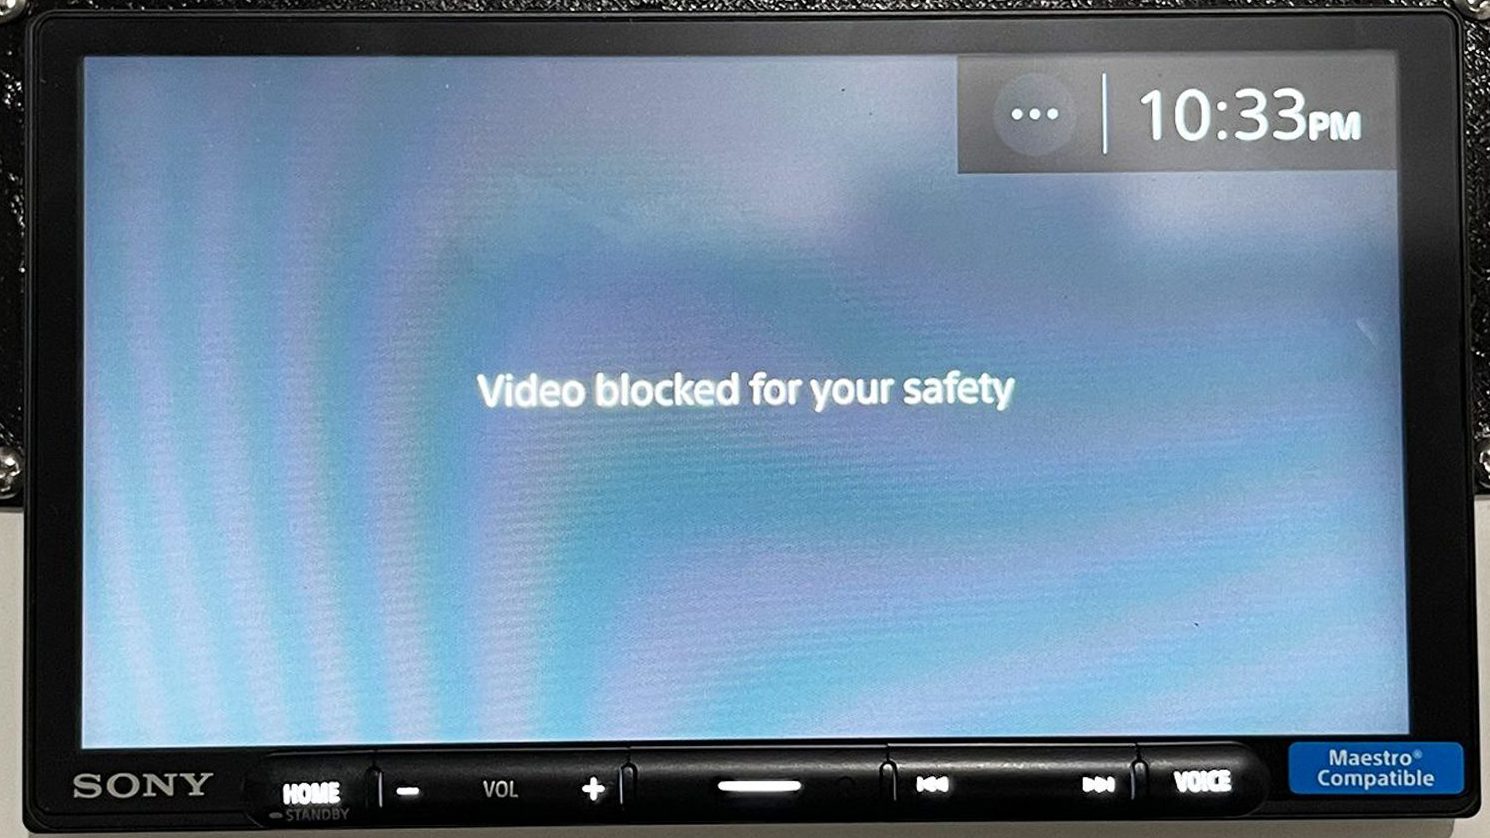 видео заблокировано в целях безопасности на головных устройствах Sony, jvc, kenwood, alpine, jensen и других